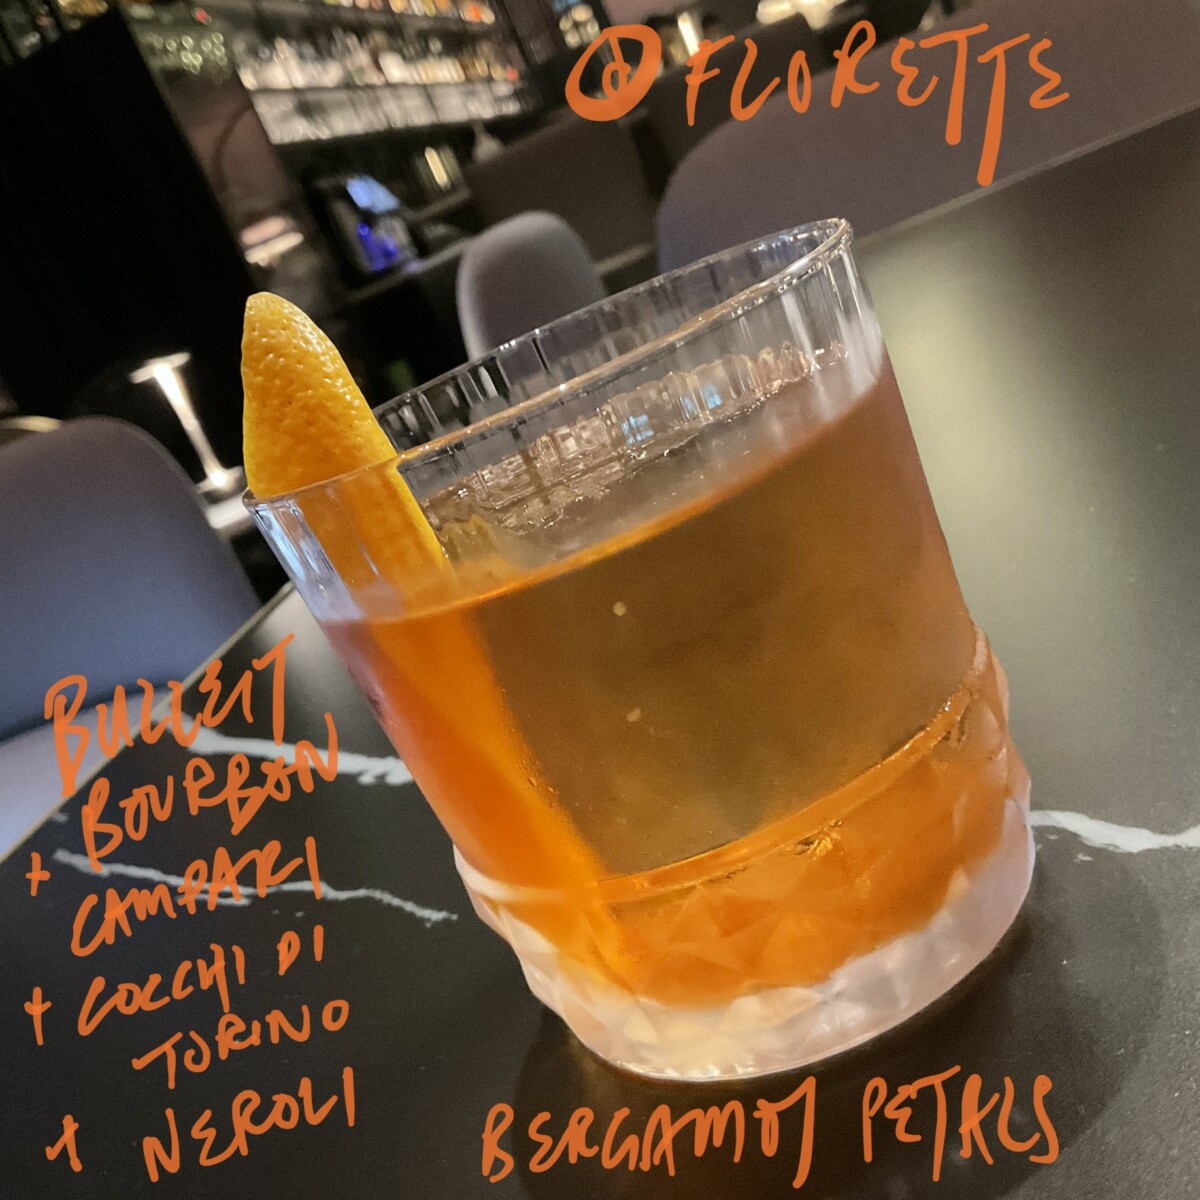 Florette cocktail